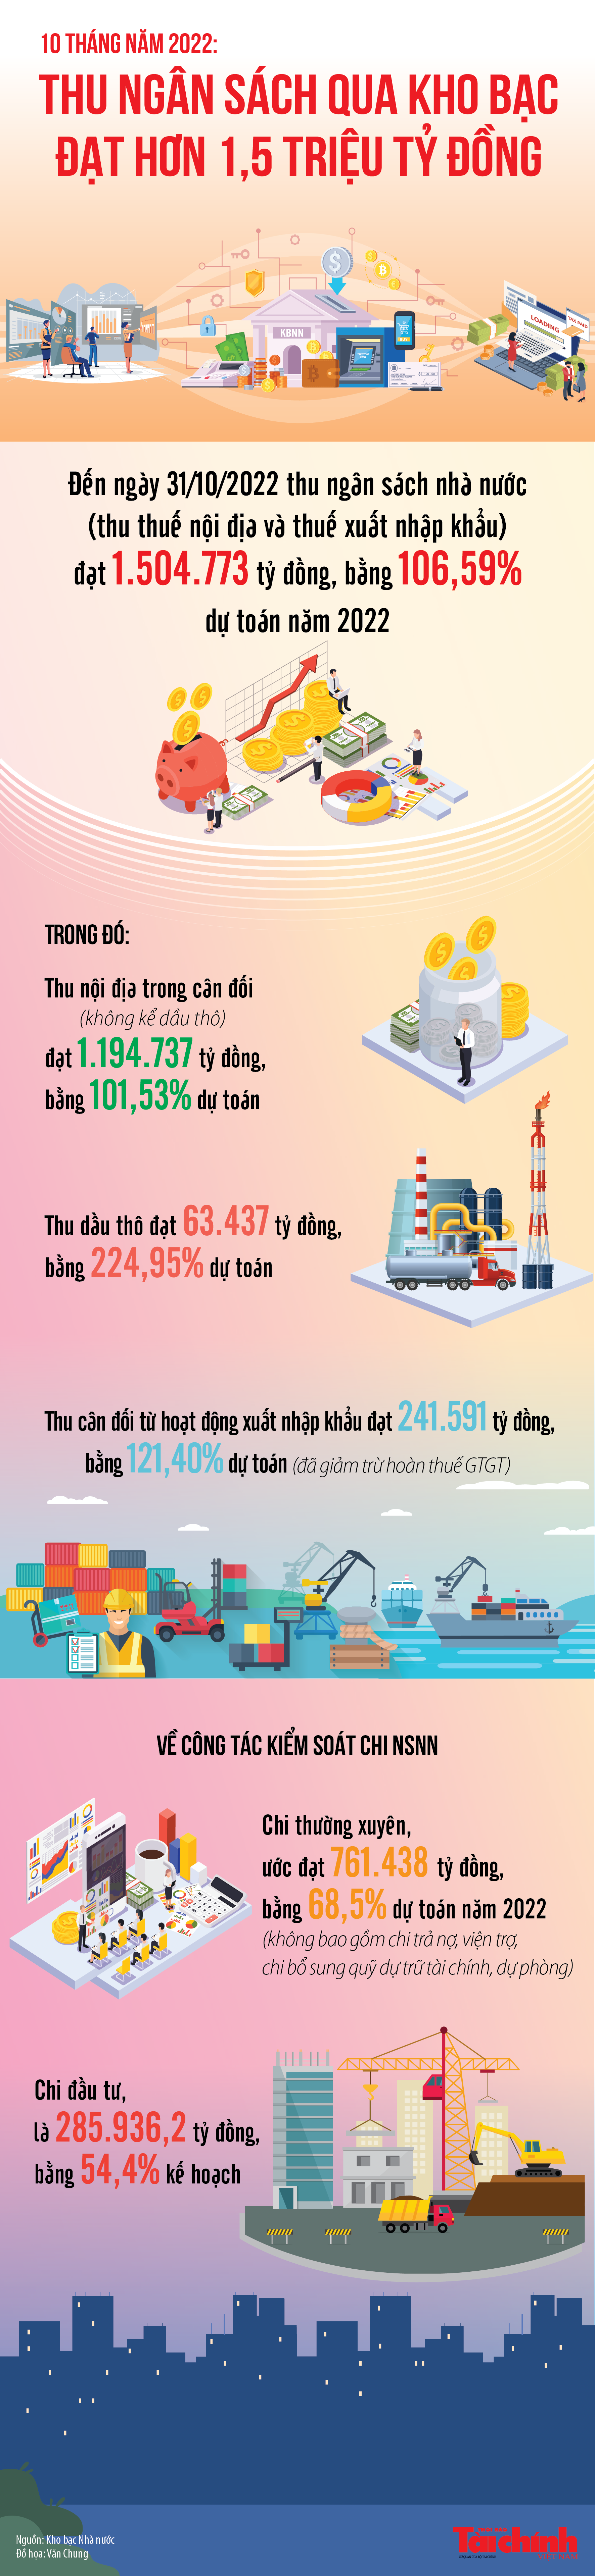 Infographics: Thu ngân sách nhà nước qua kho bạc bằng 106,59% dự toán năm 2022